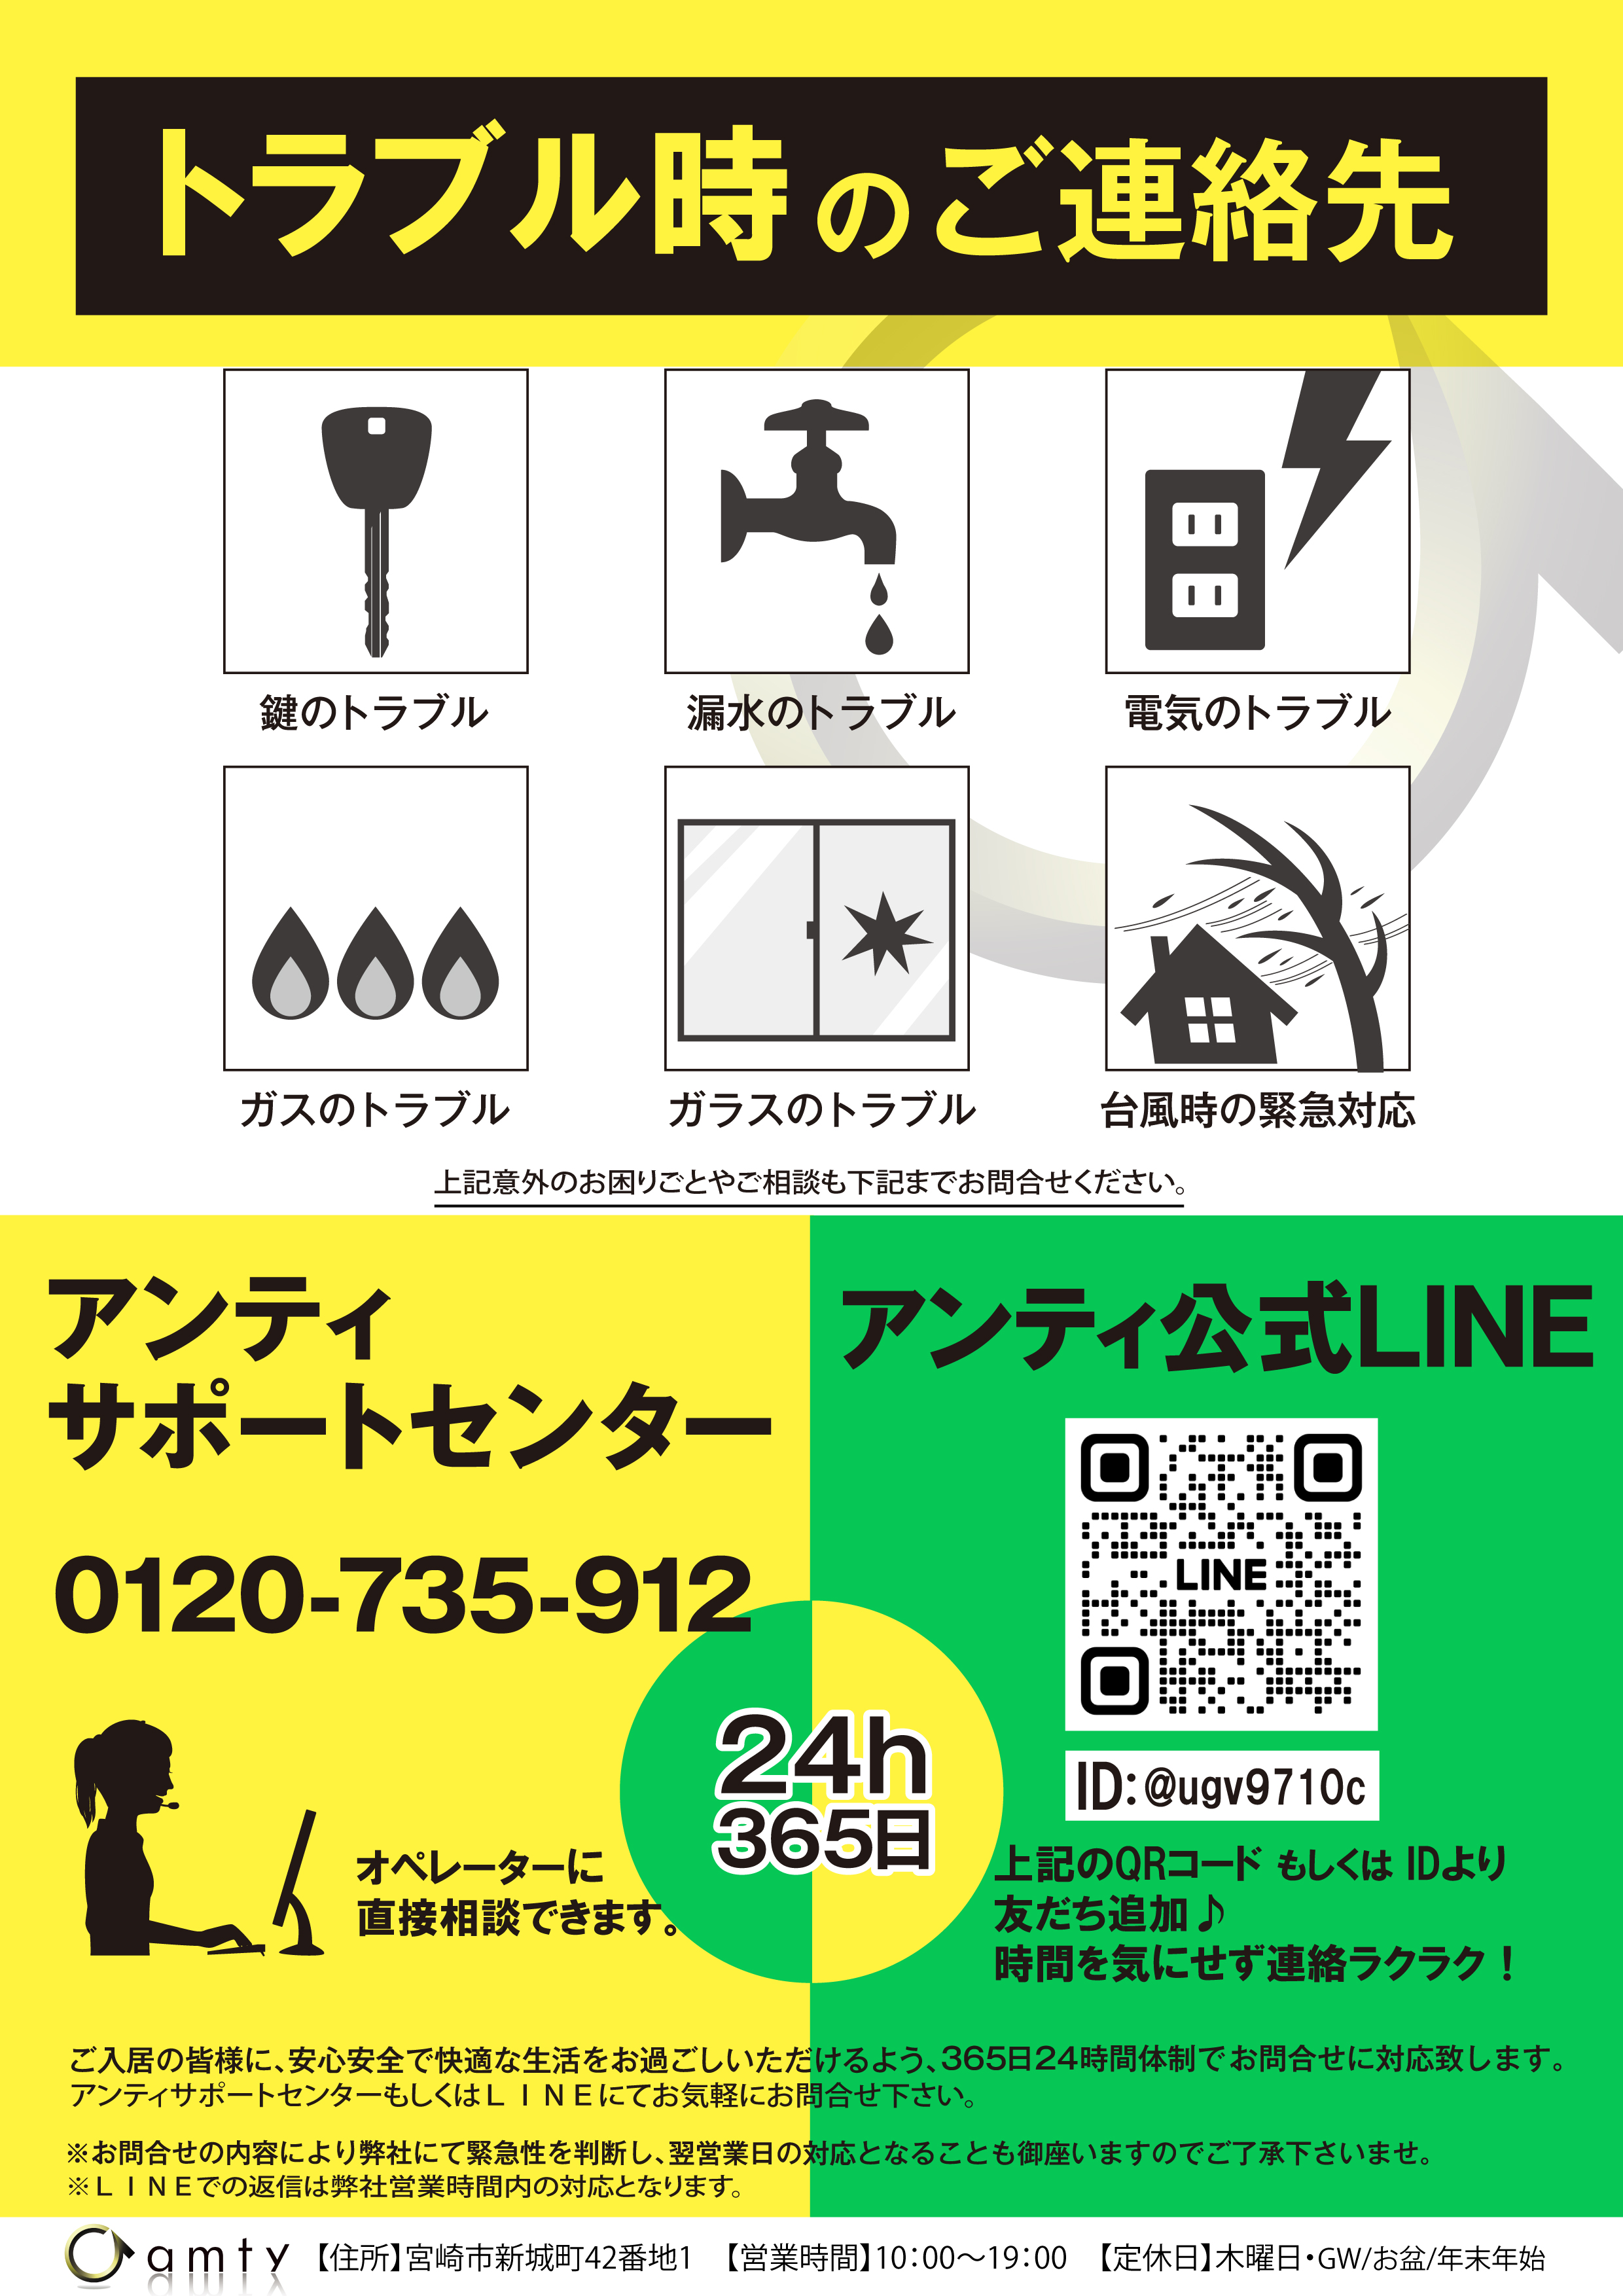 新アンティ サポートセンター&LINE-01